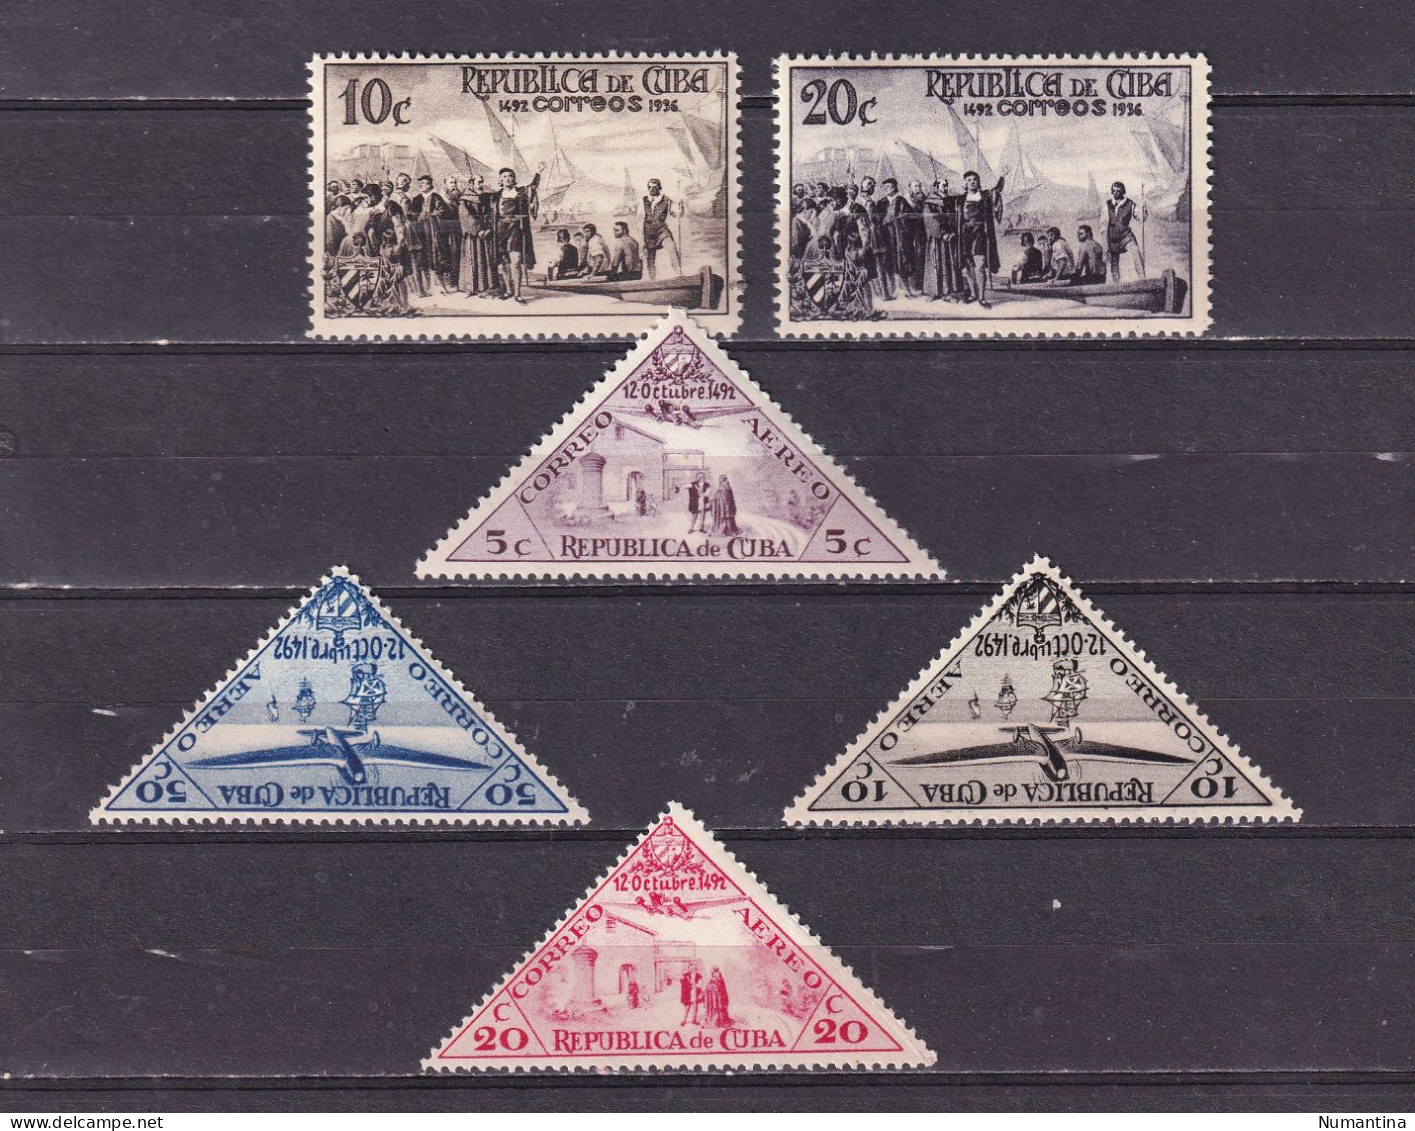 Cuba - 1850/1994 - Coleccion Sellos, series, Hojas, Minipliegos